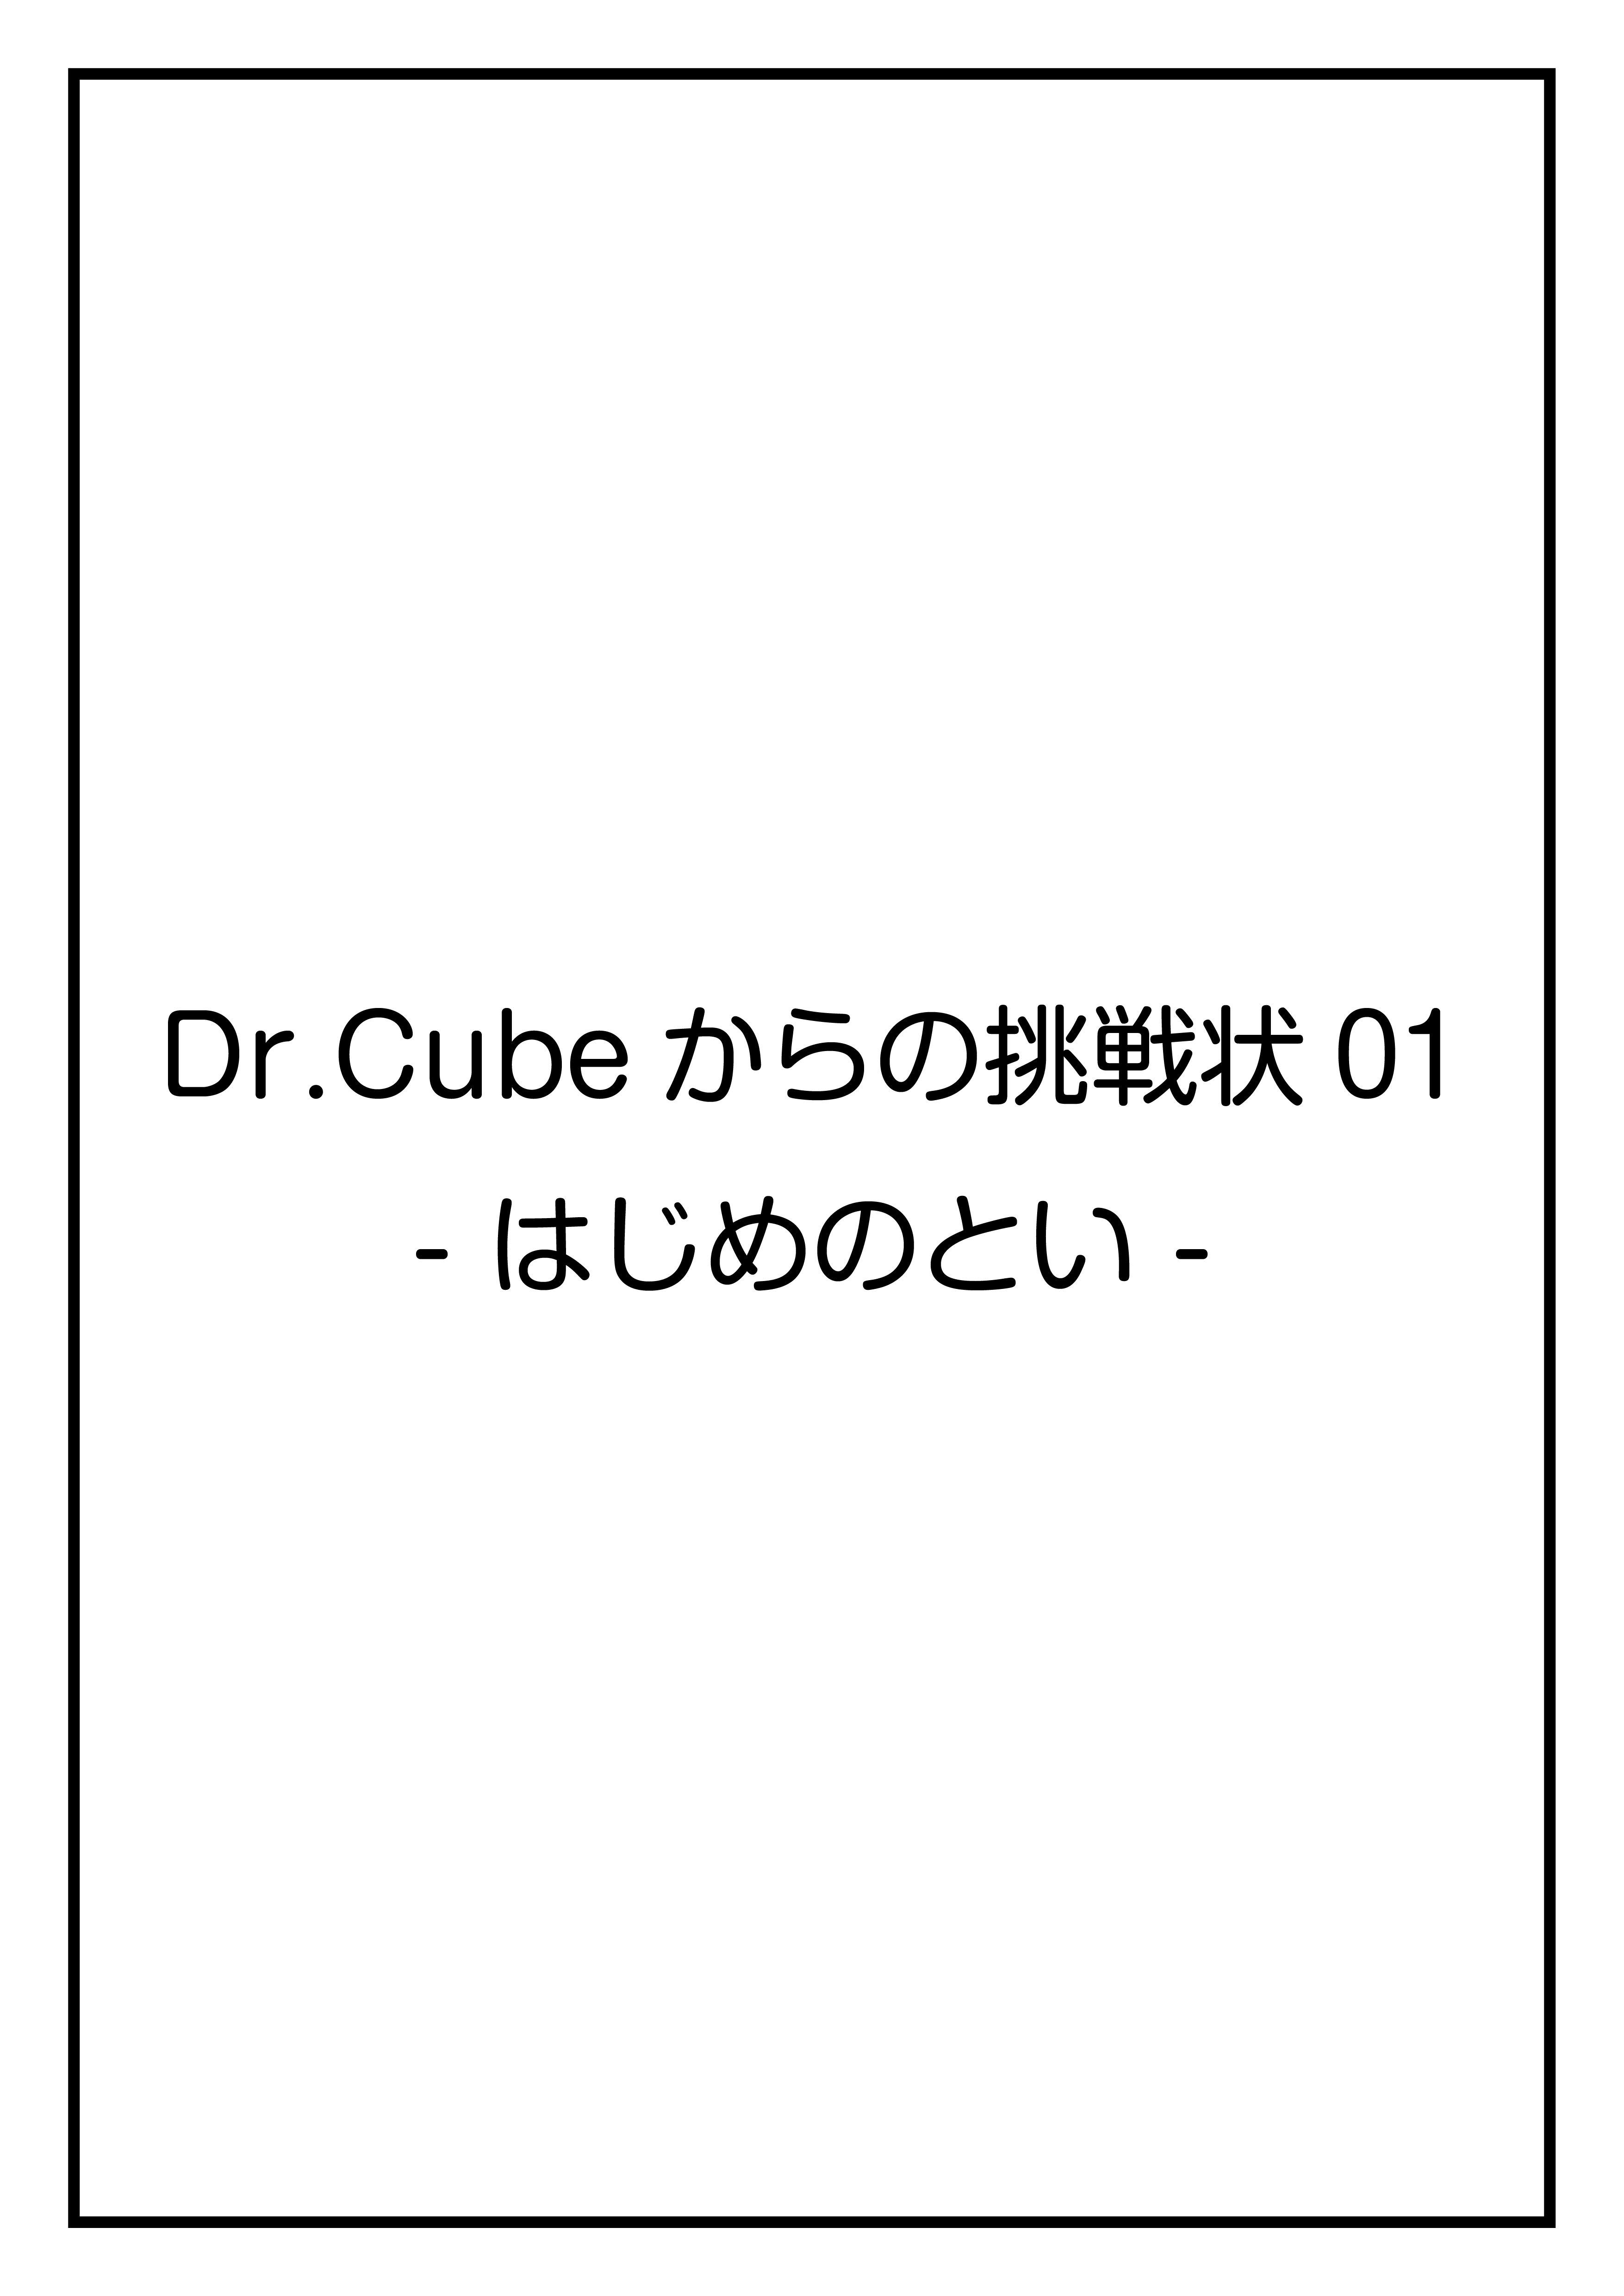 CubeFactory ✕ テクニコテクニカ『Dr.Cubeからの挑戦状シリーズ』体験型謎解きゲーム